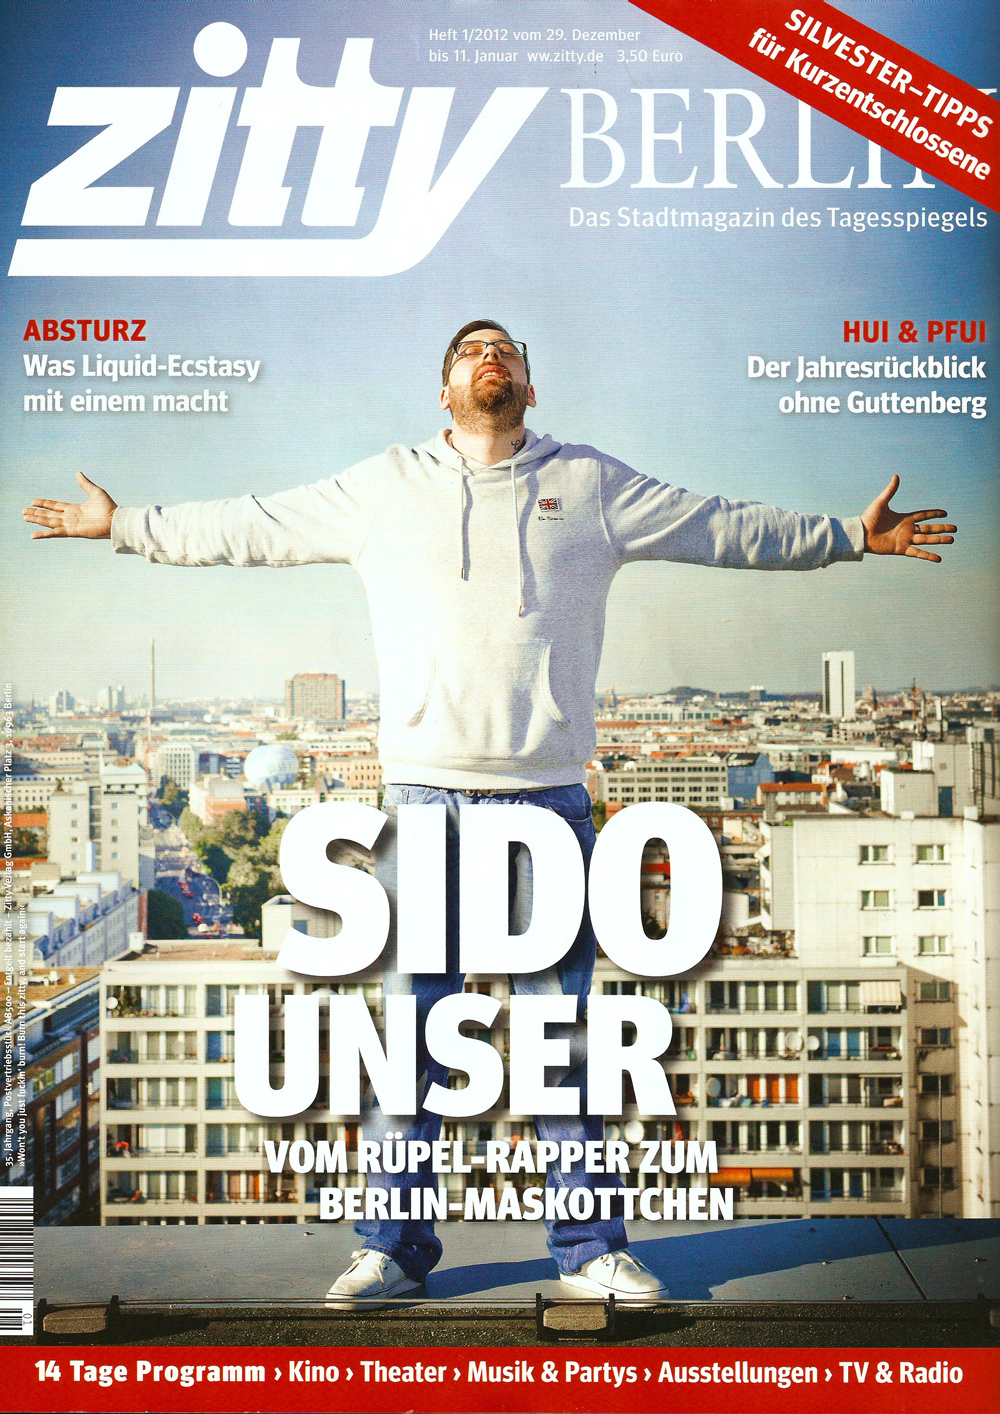 SIDO geboren um frei zu sein - Cover - Zitty Berlin 01/2012